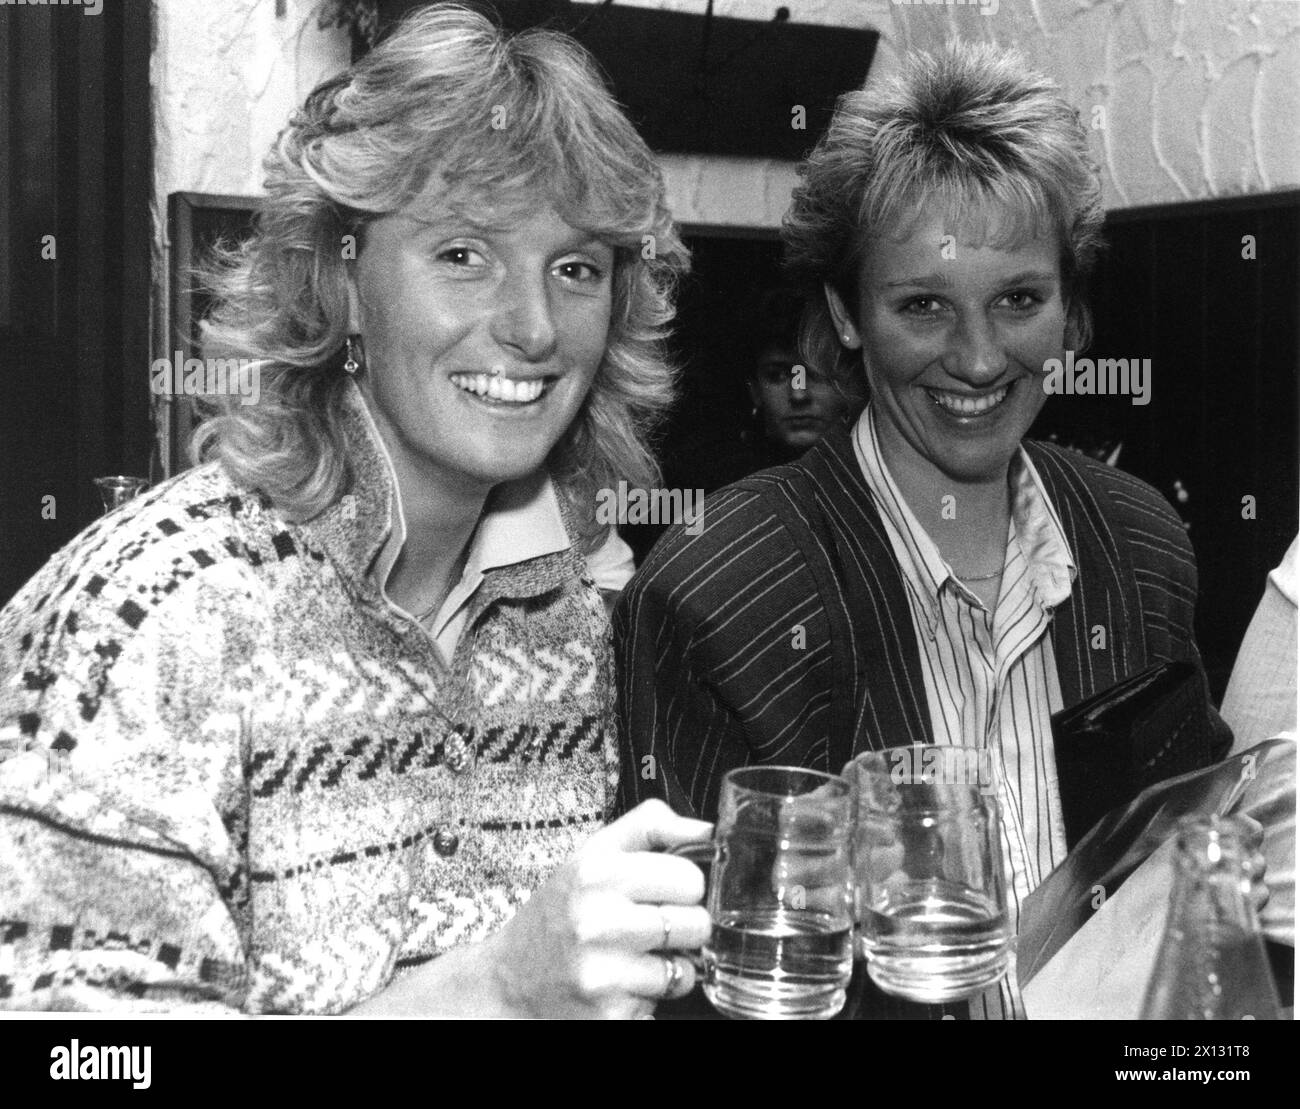 Das Foto wurde am 9. Oktober 1987 aufgenommen und zeigt die österreichische Skifahrerin Sylvia Eder (l.), die mit ihrer deutschen Kollegin Michaela Gerg bei einem geselligen Treffen in Wien eine Brille klickt. - 19871009 PD0012 - Rechteinfo: Rechte verwaltet (RM) Stockfoto